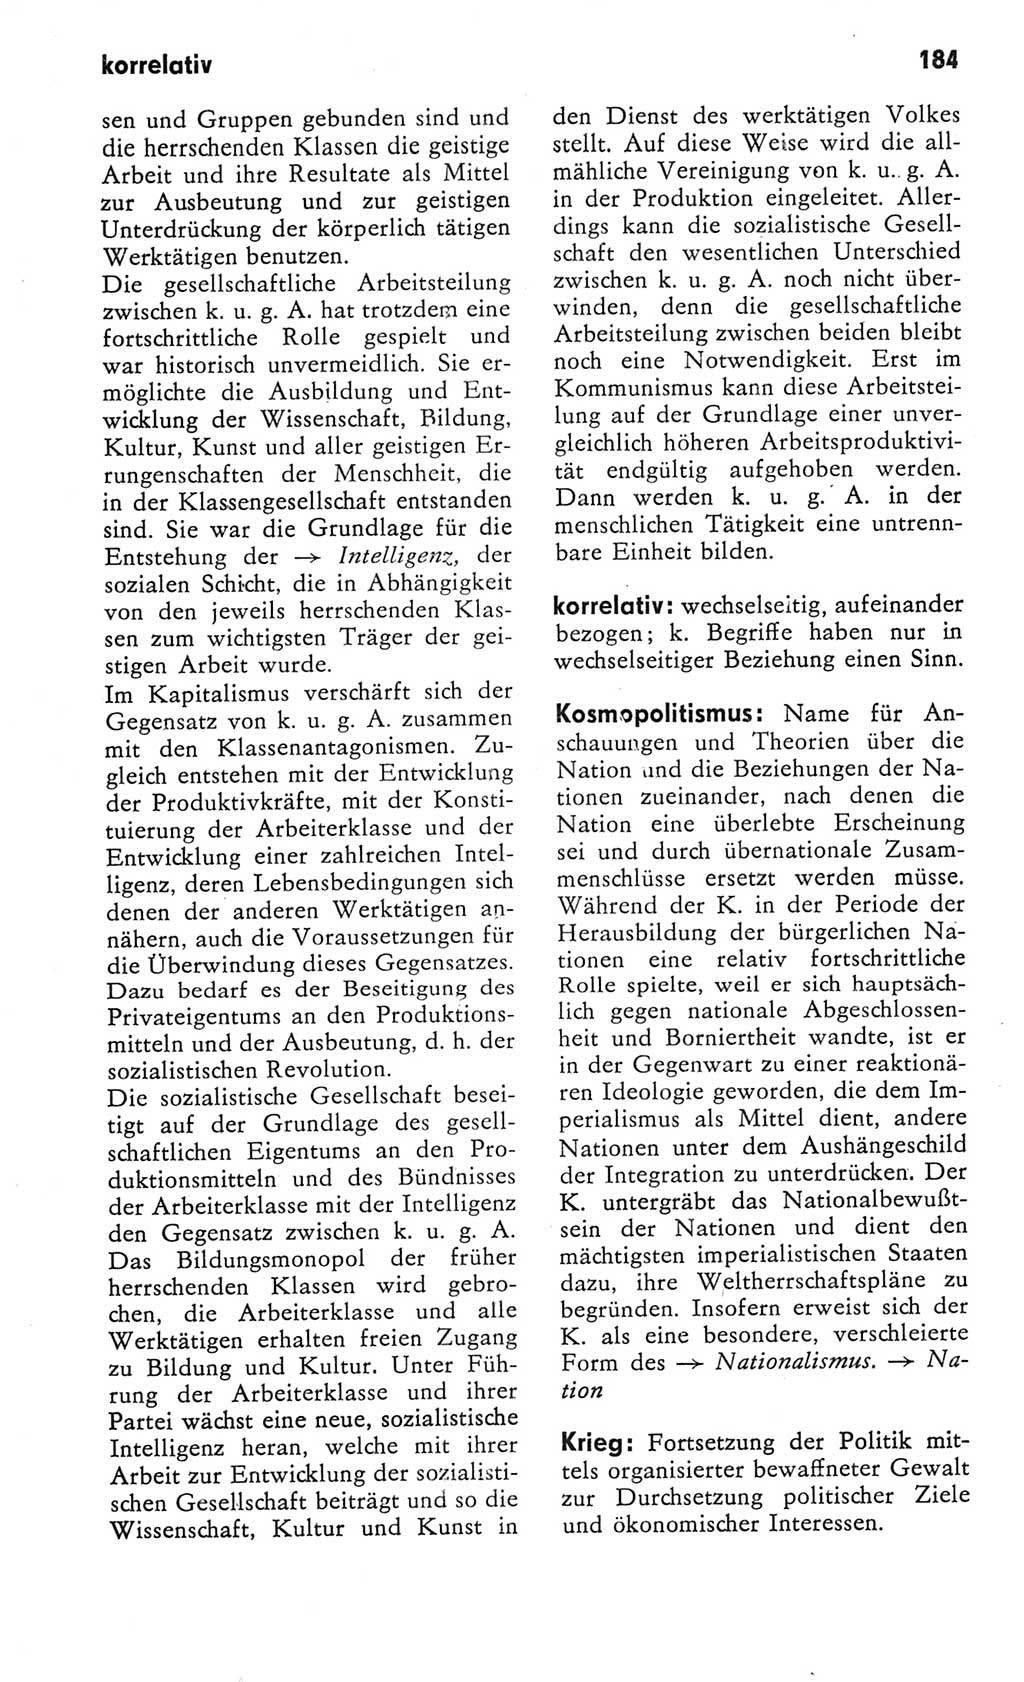 Kleines Wörterbuch der marxistisch-leninistischen Philosophie [Deutsche Demokratische Republik (DDR)] 1982, Seite 184 (Kl. Wb. ML Phil. DDR 1982, S. 184)